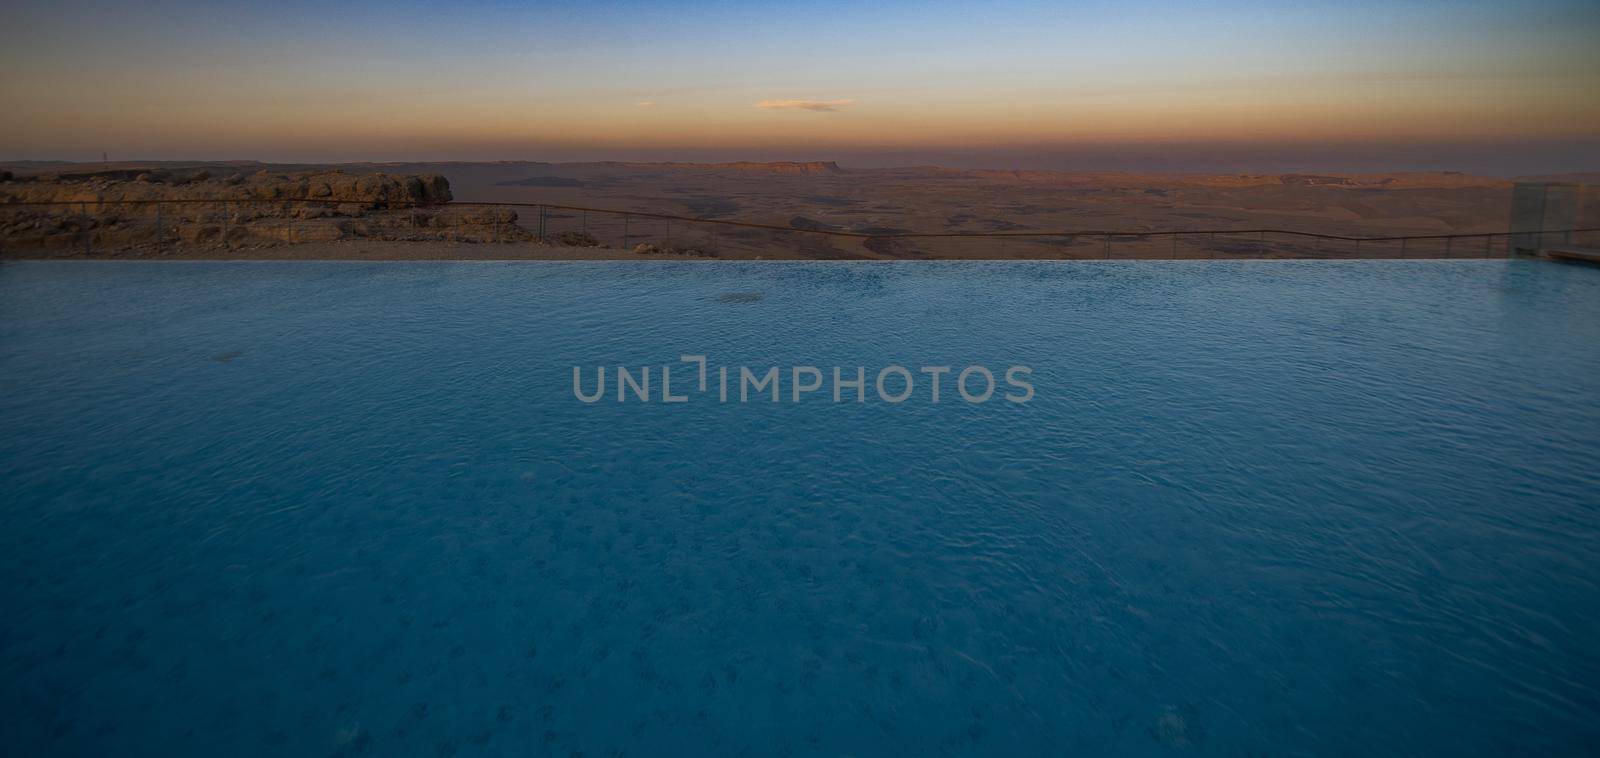 Luxury hotel in desert landscape in Israel by javax